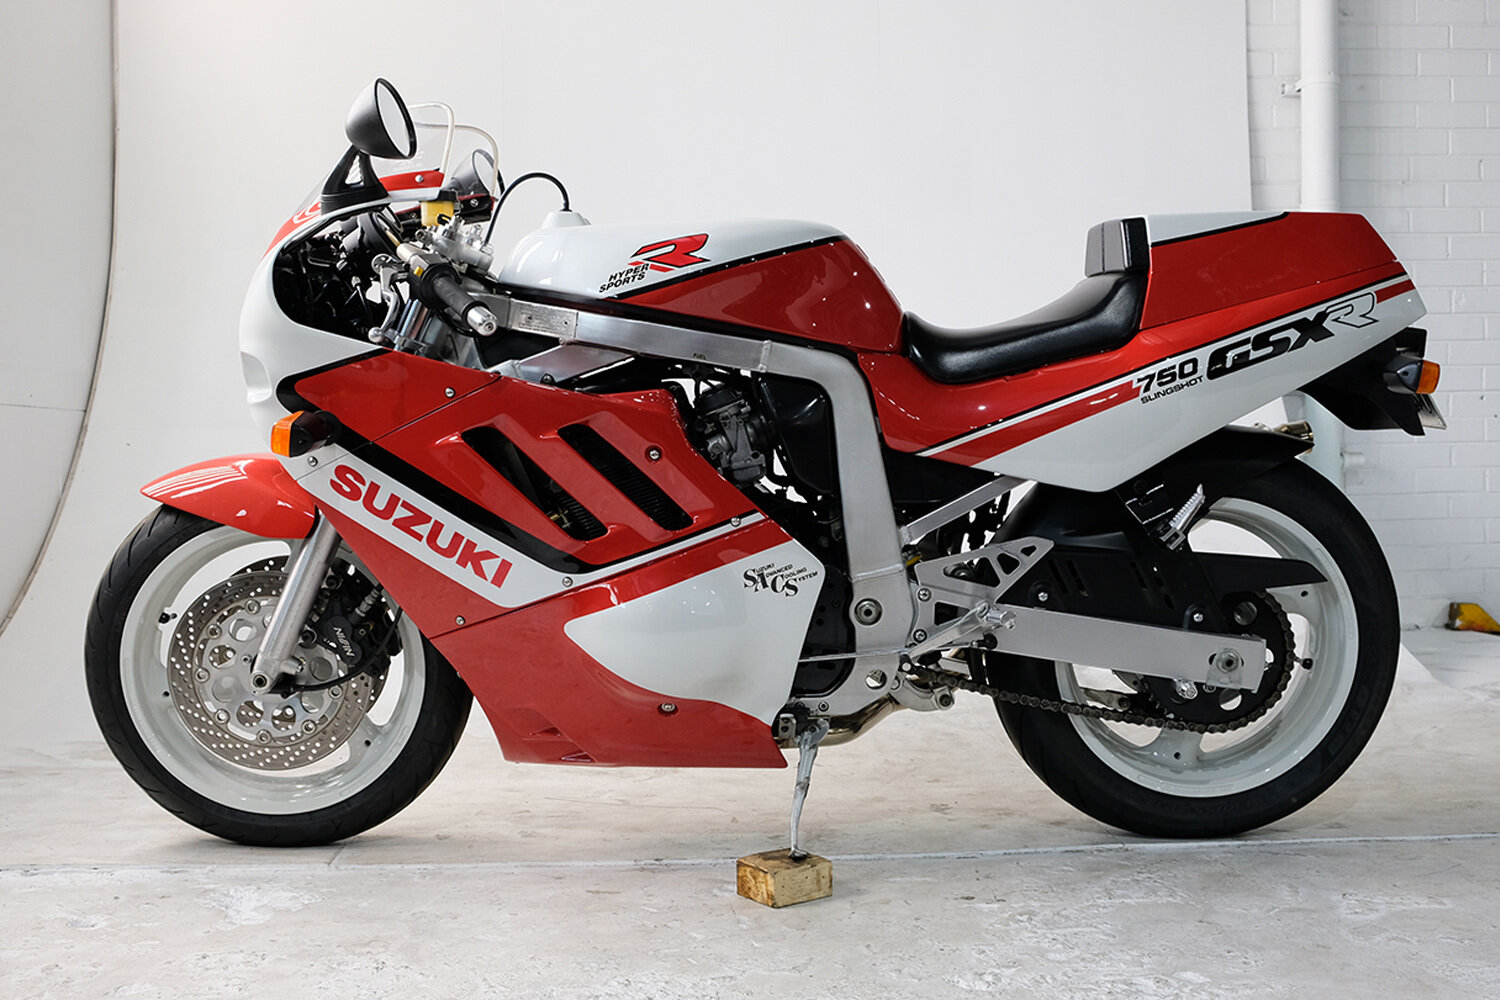 2011 Suzuki GSXR750 Review  Motorcyclecom